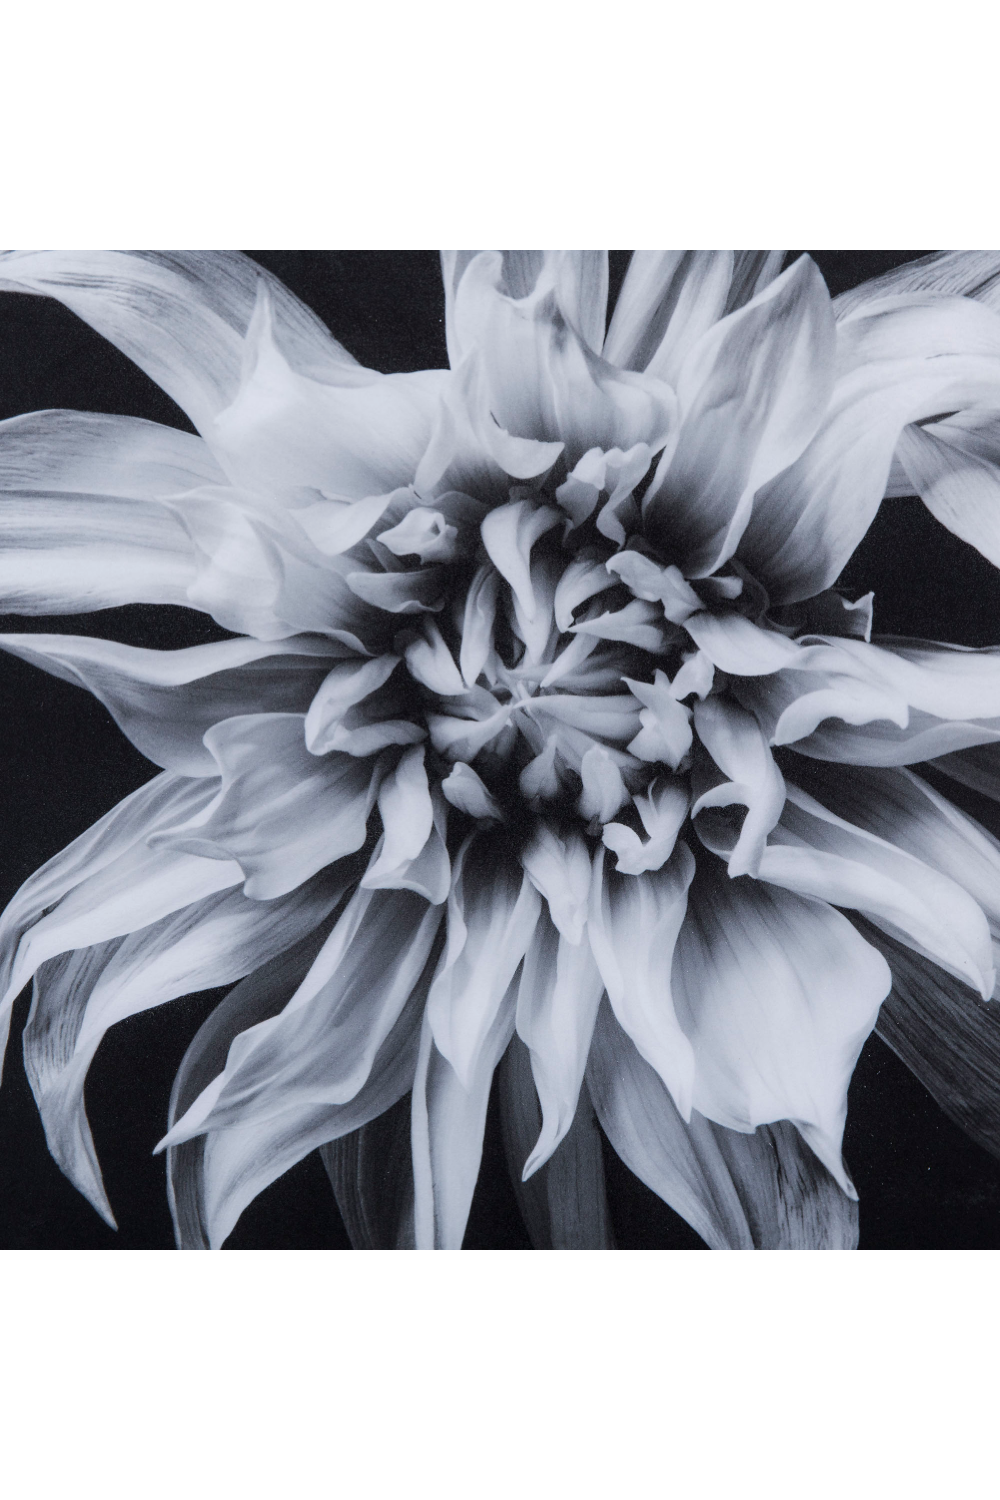 Black And White Epoxy Artwork | Andrew Martin | Oroa.com